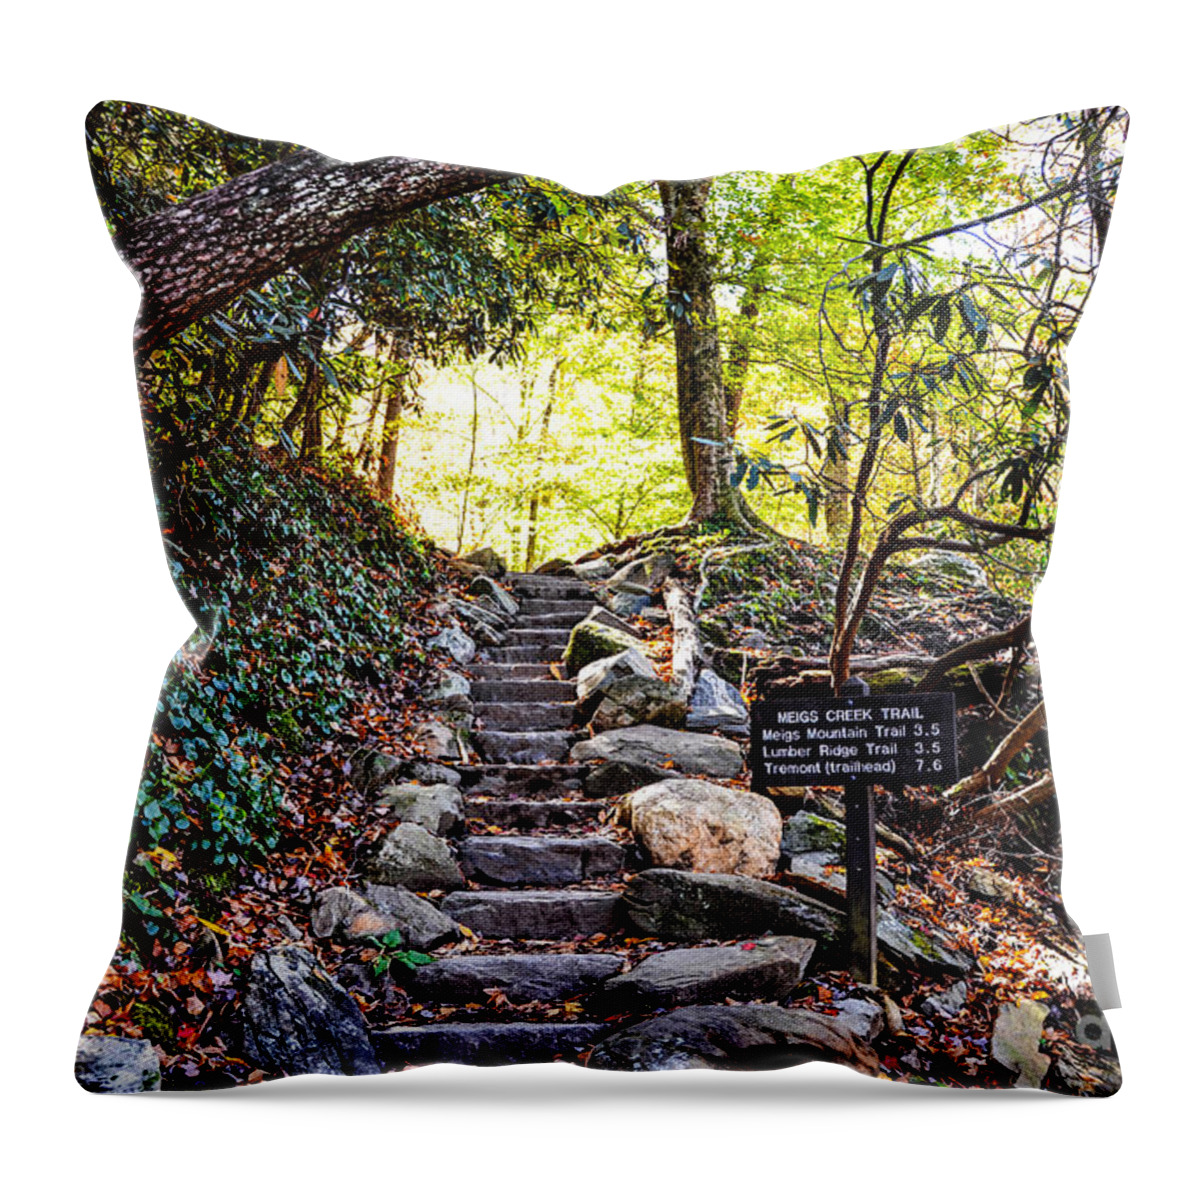 Meigs Creek Throw Pillow featuring the photograph Meigs Creek Trailhead by Paul Mashburn